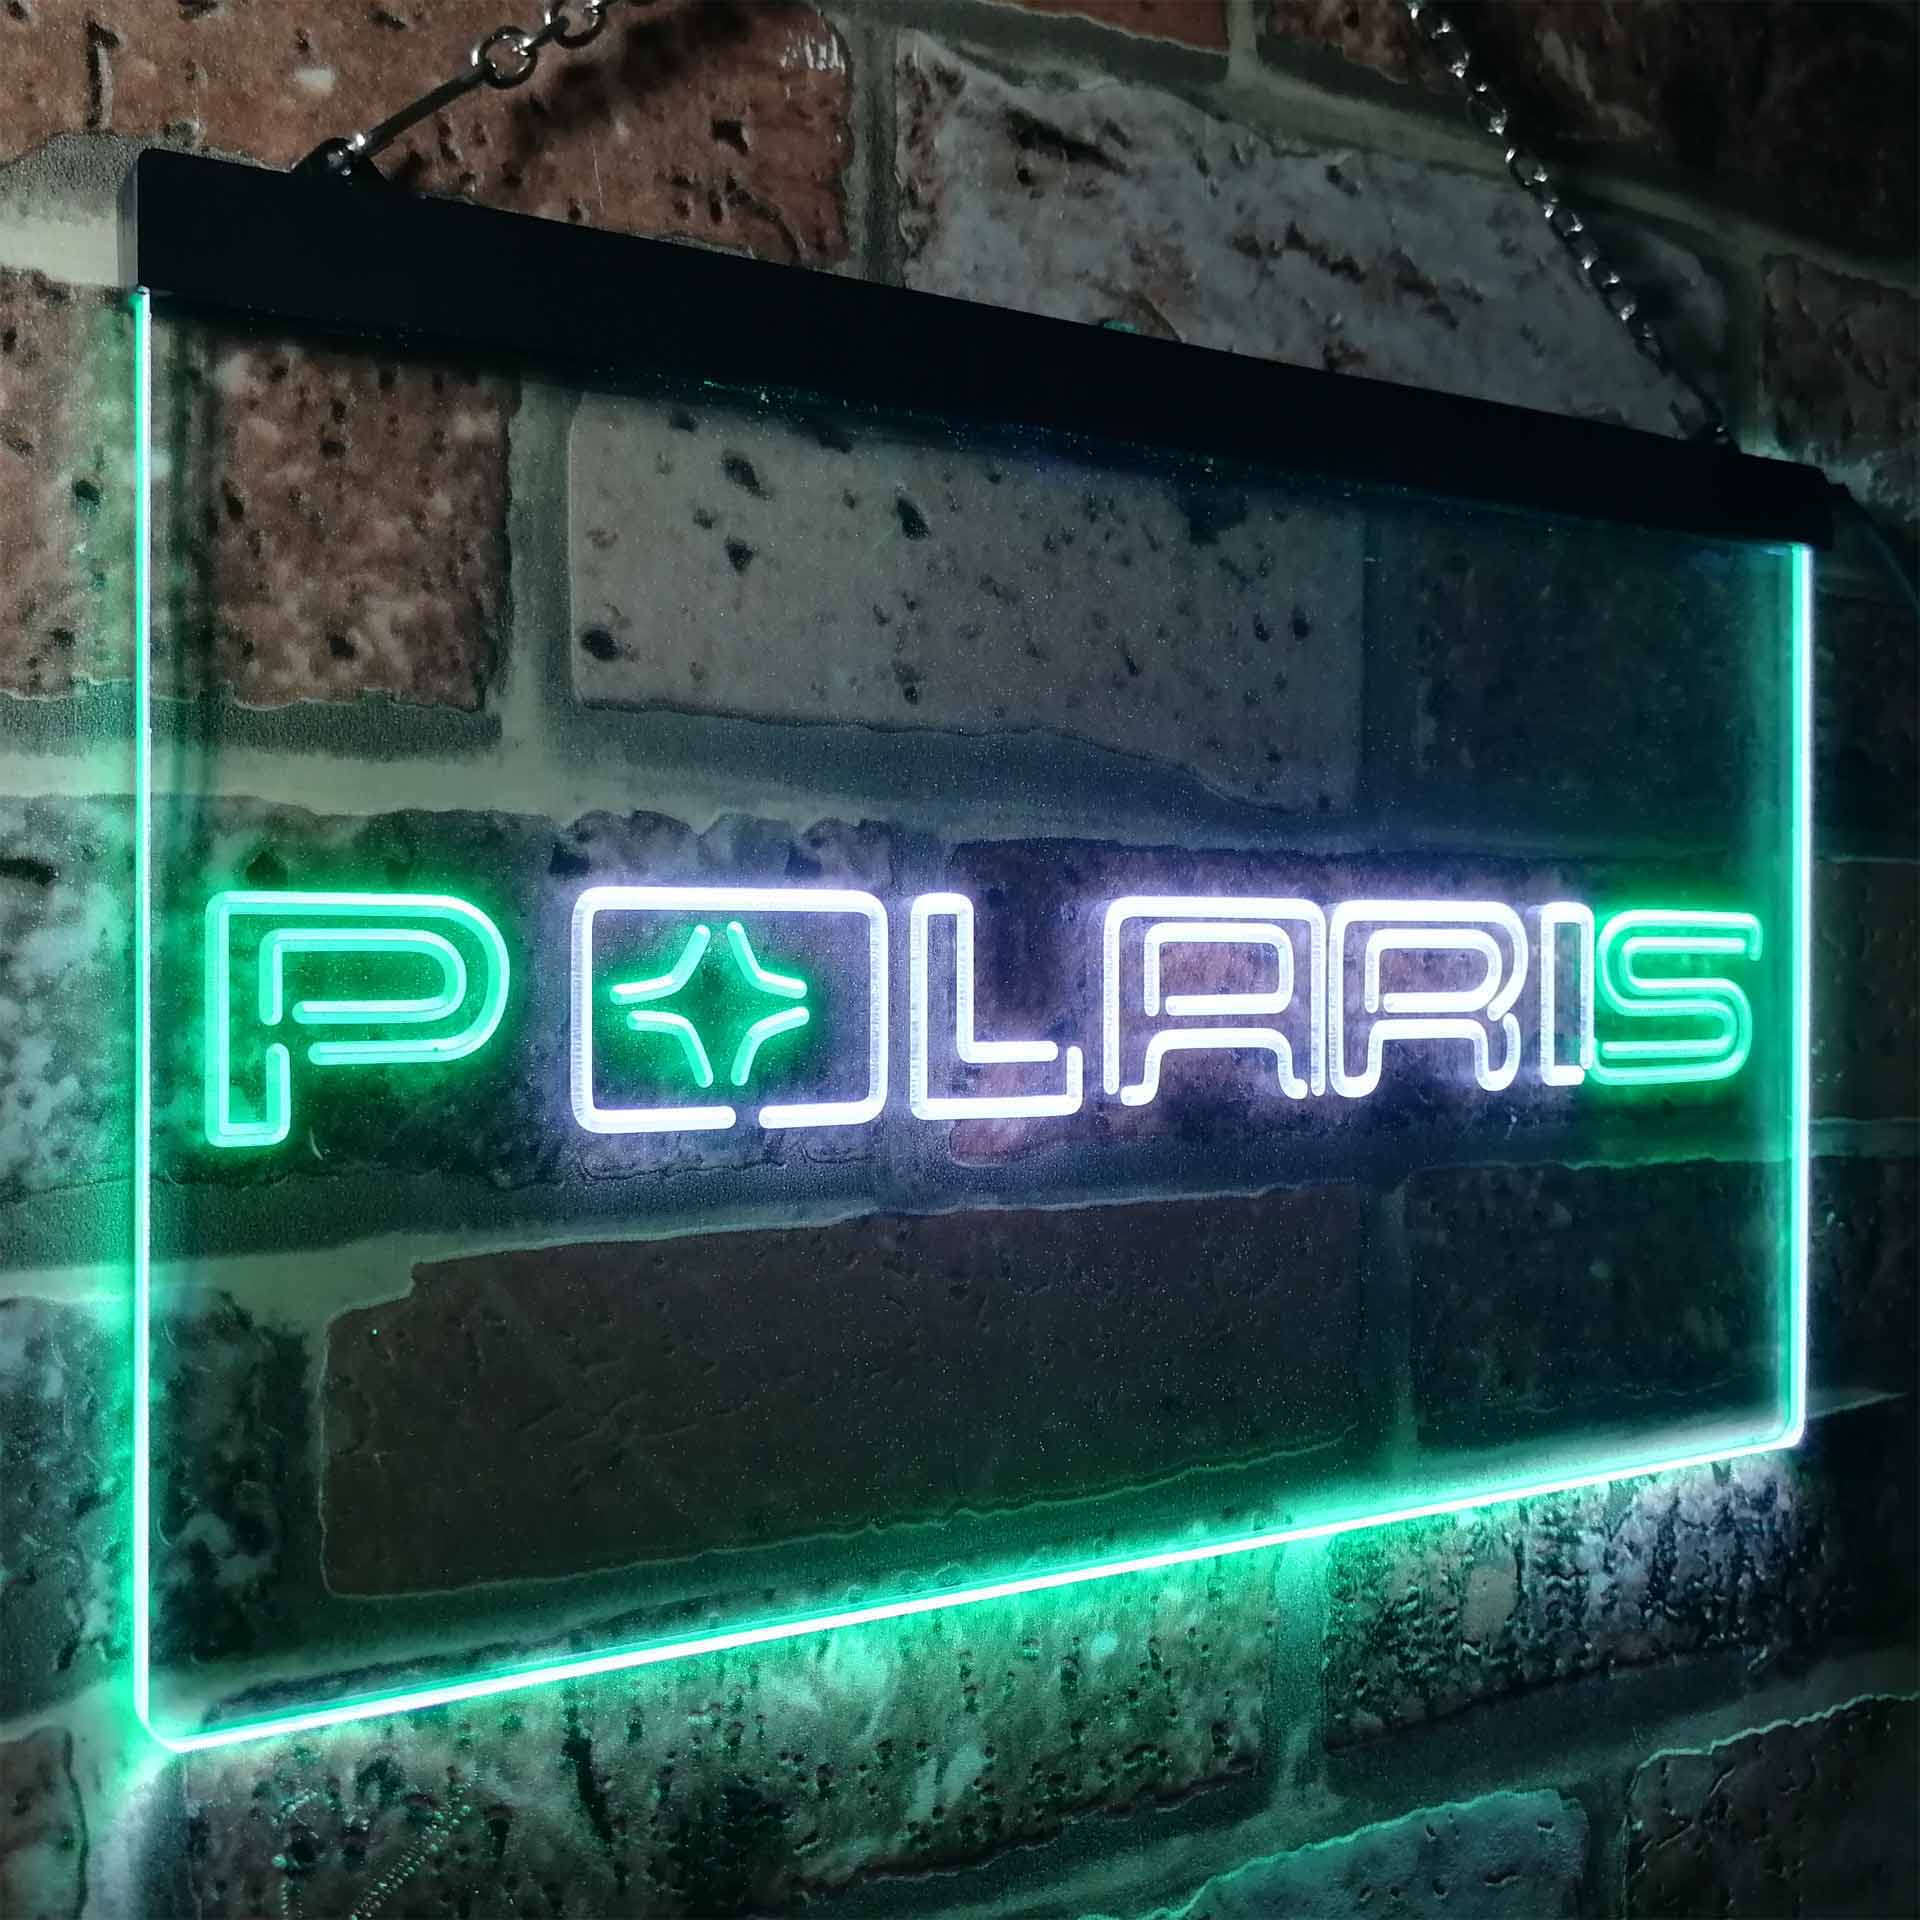 Polaris Snowmobile LED Neon Sign